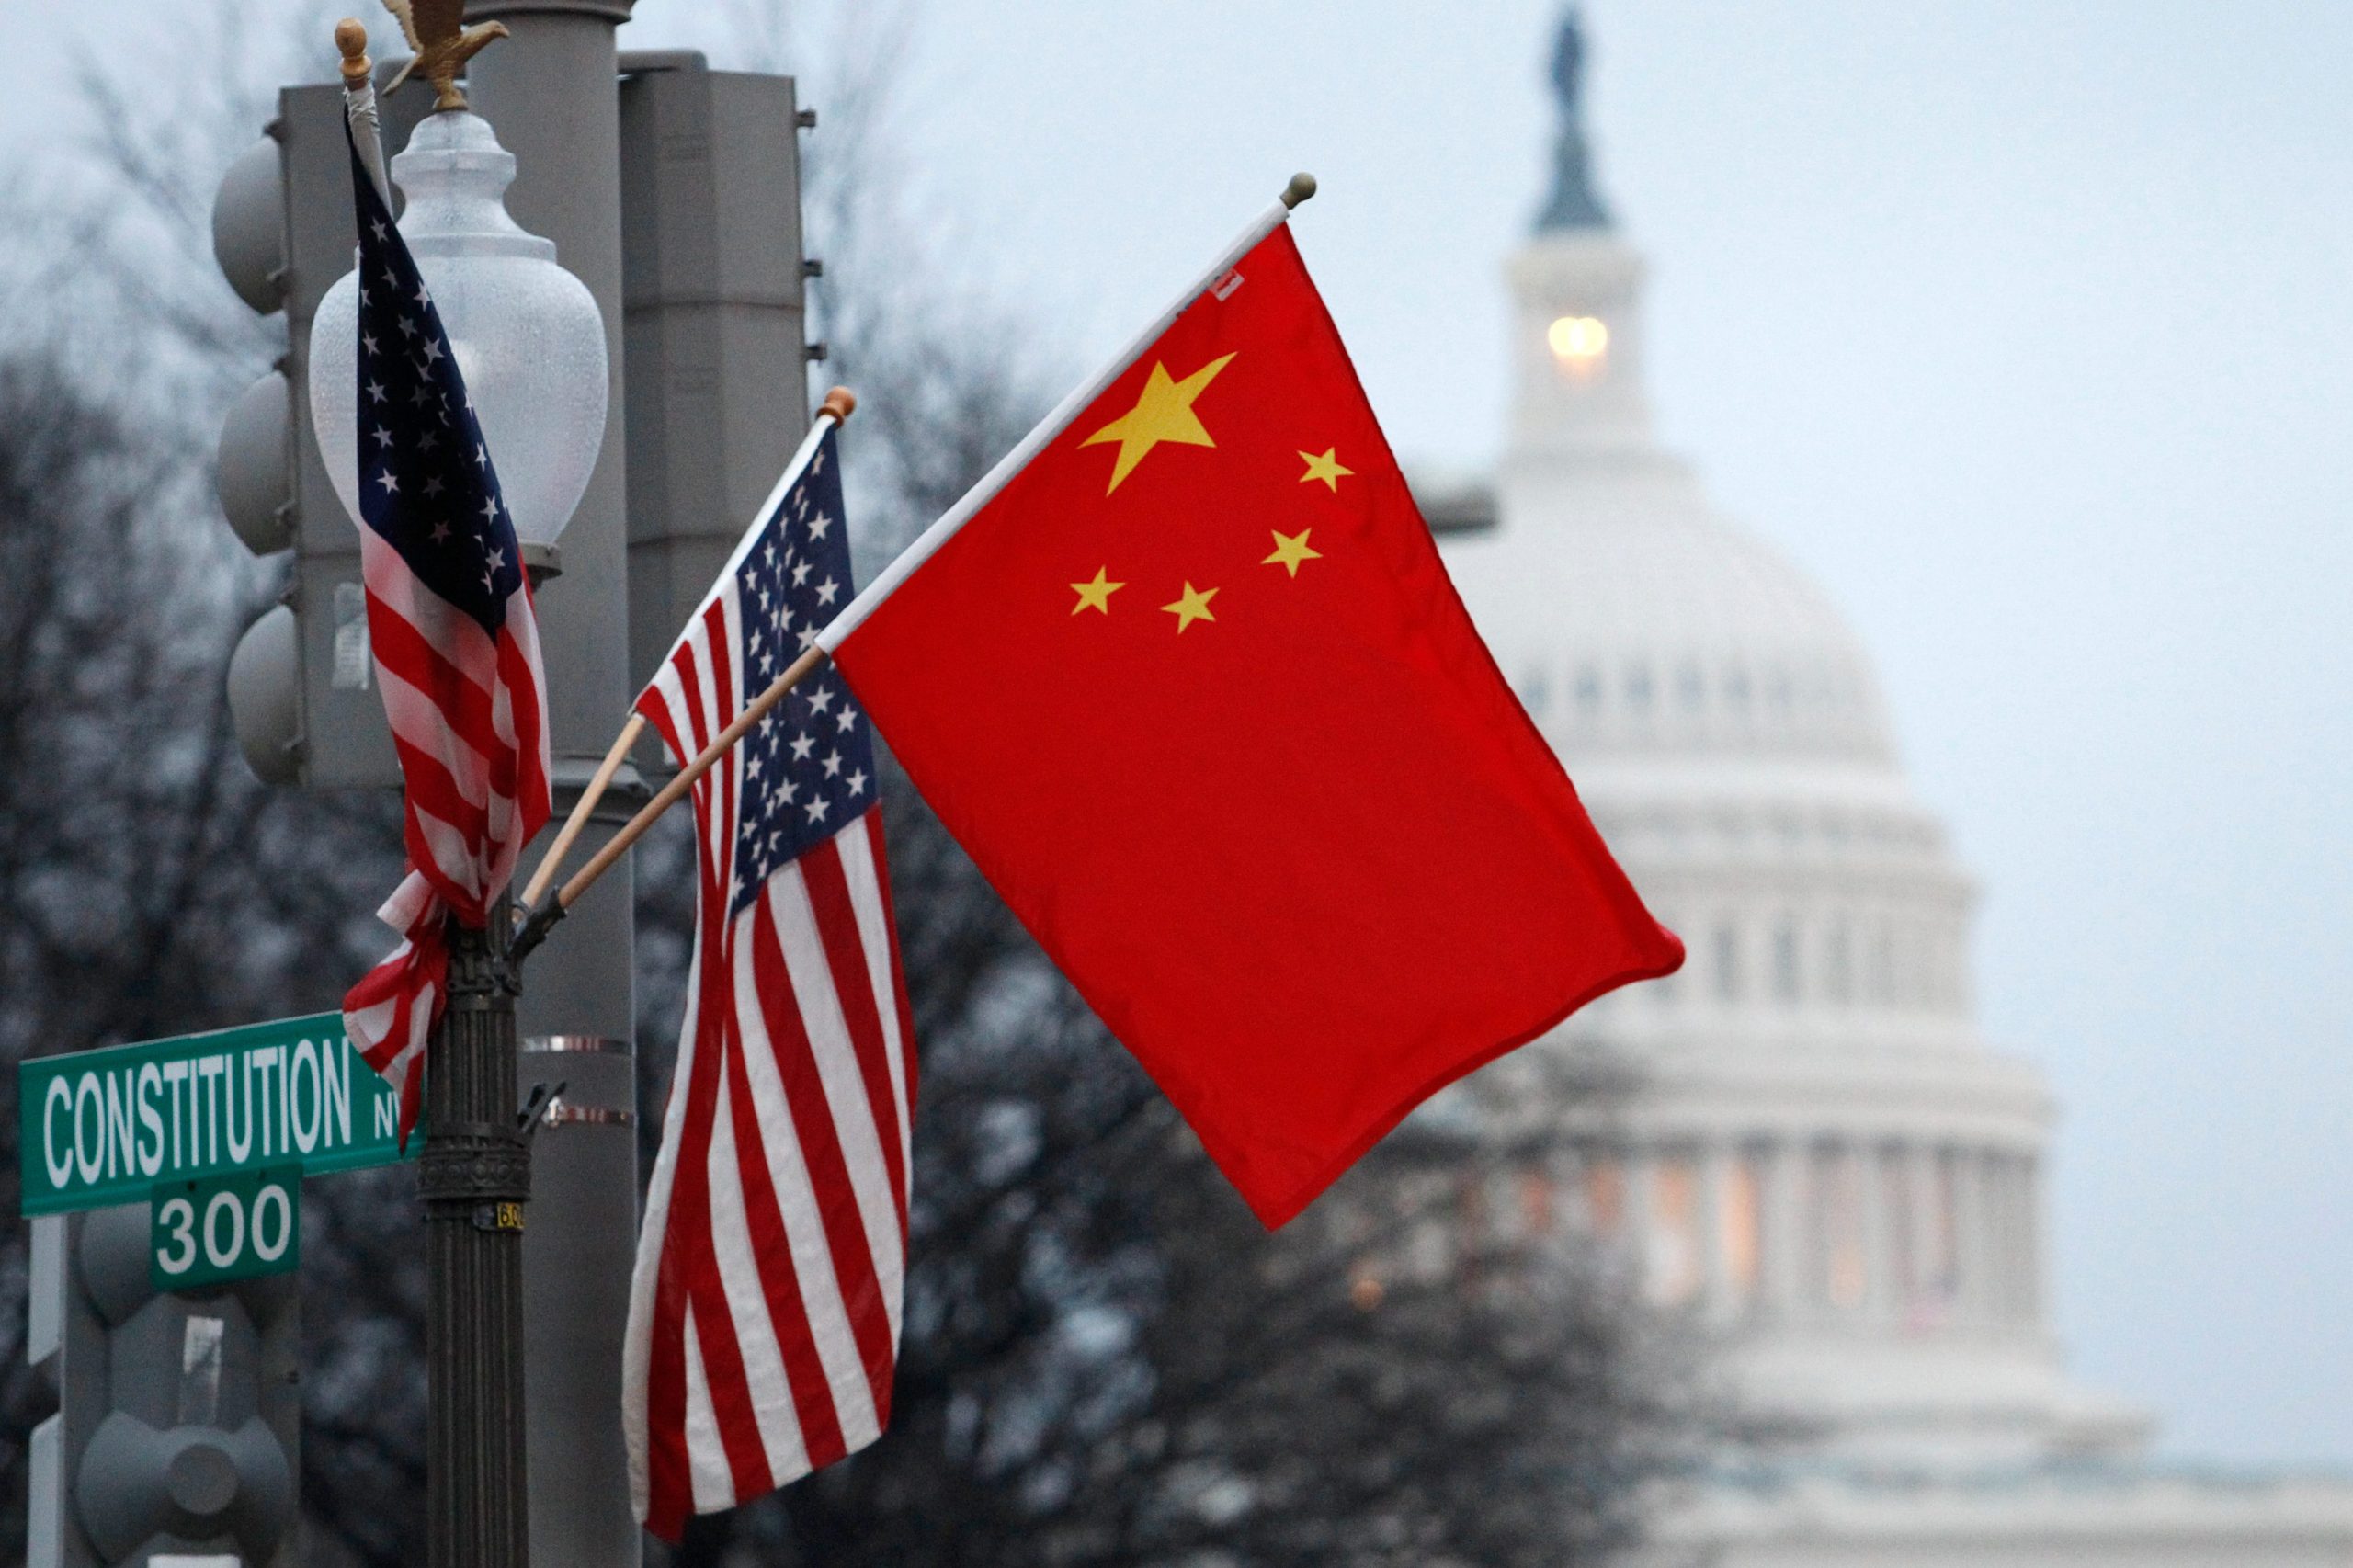 SHBA: Nuk do lejojmë që tregu të ‘mbytet’ nga produkte kineze me çmime nën kosto